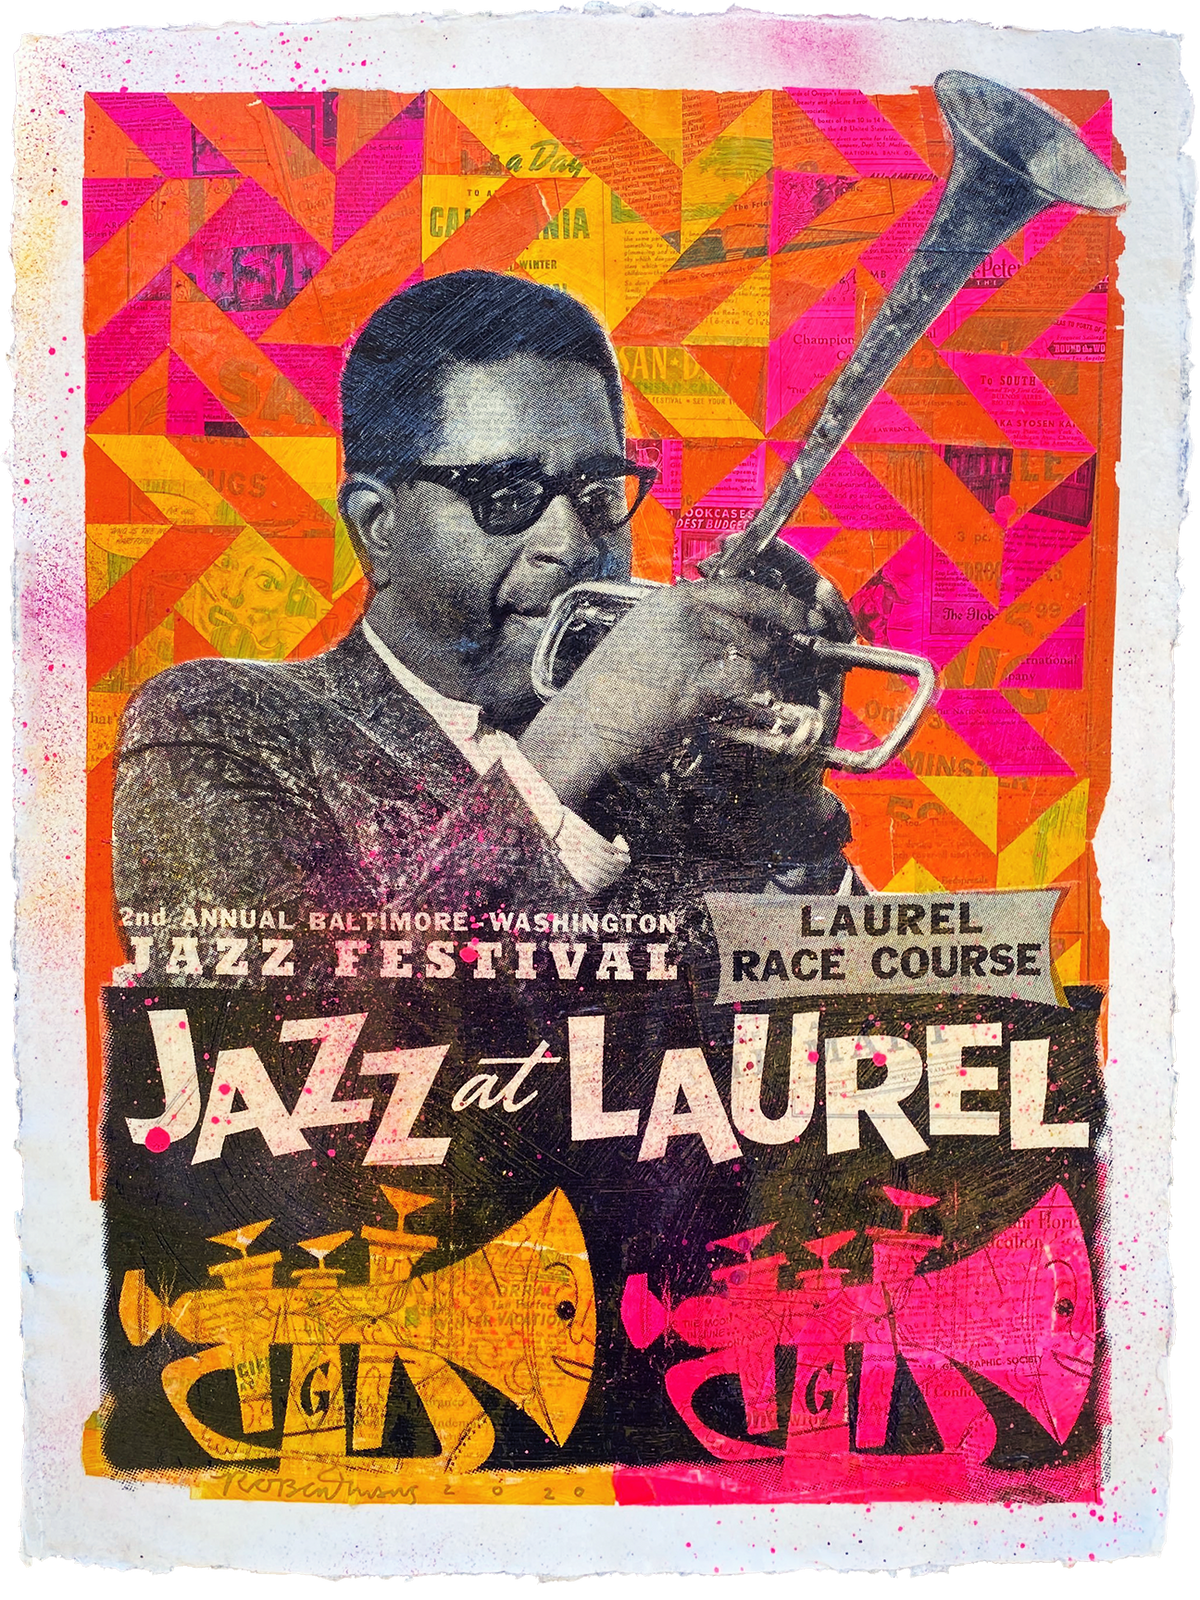 Robert Mars &quot;Jazz at Laurel&quot; - Original Mixed Media Work on Paper - 18 x 24&quot;